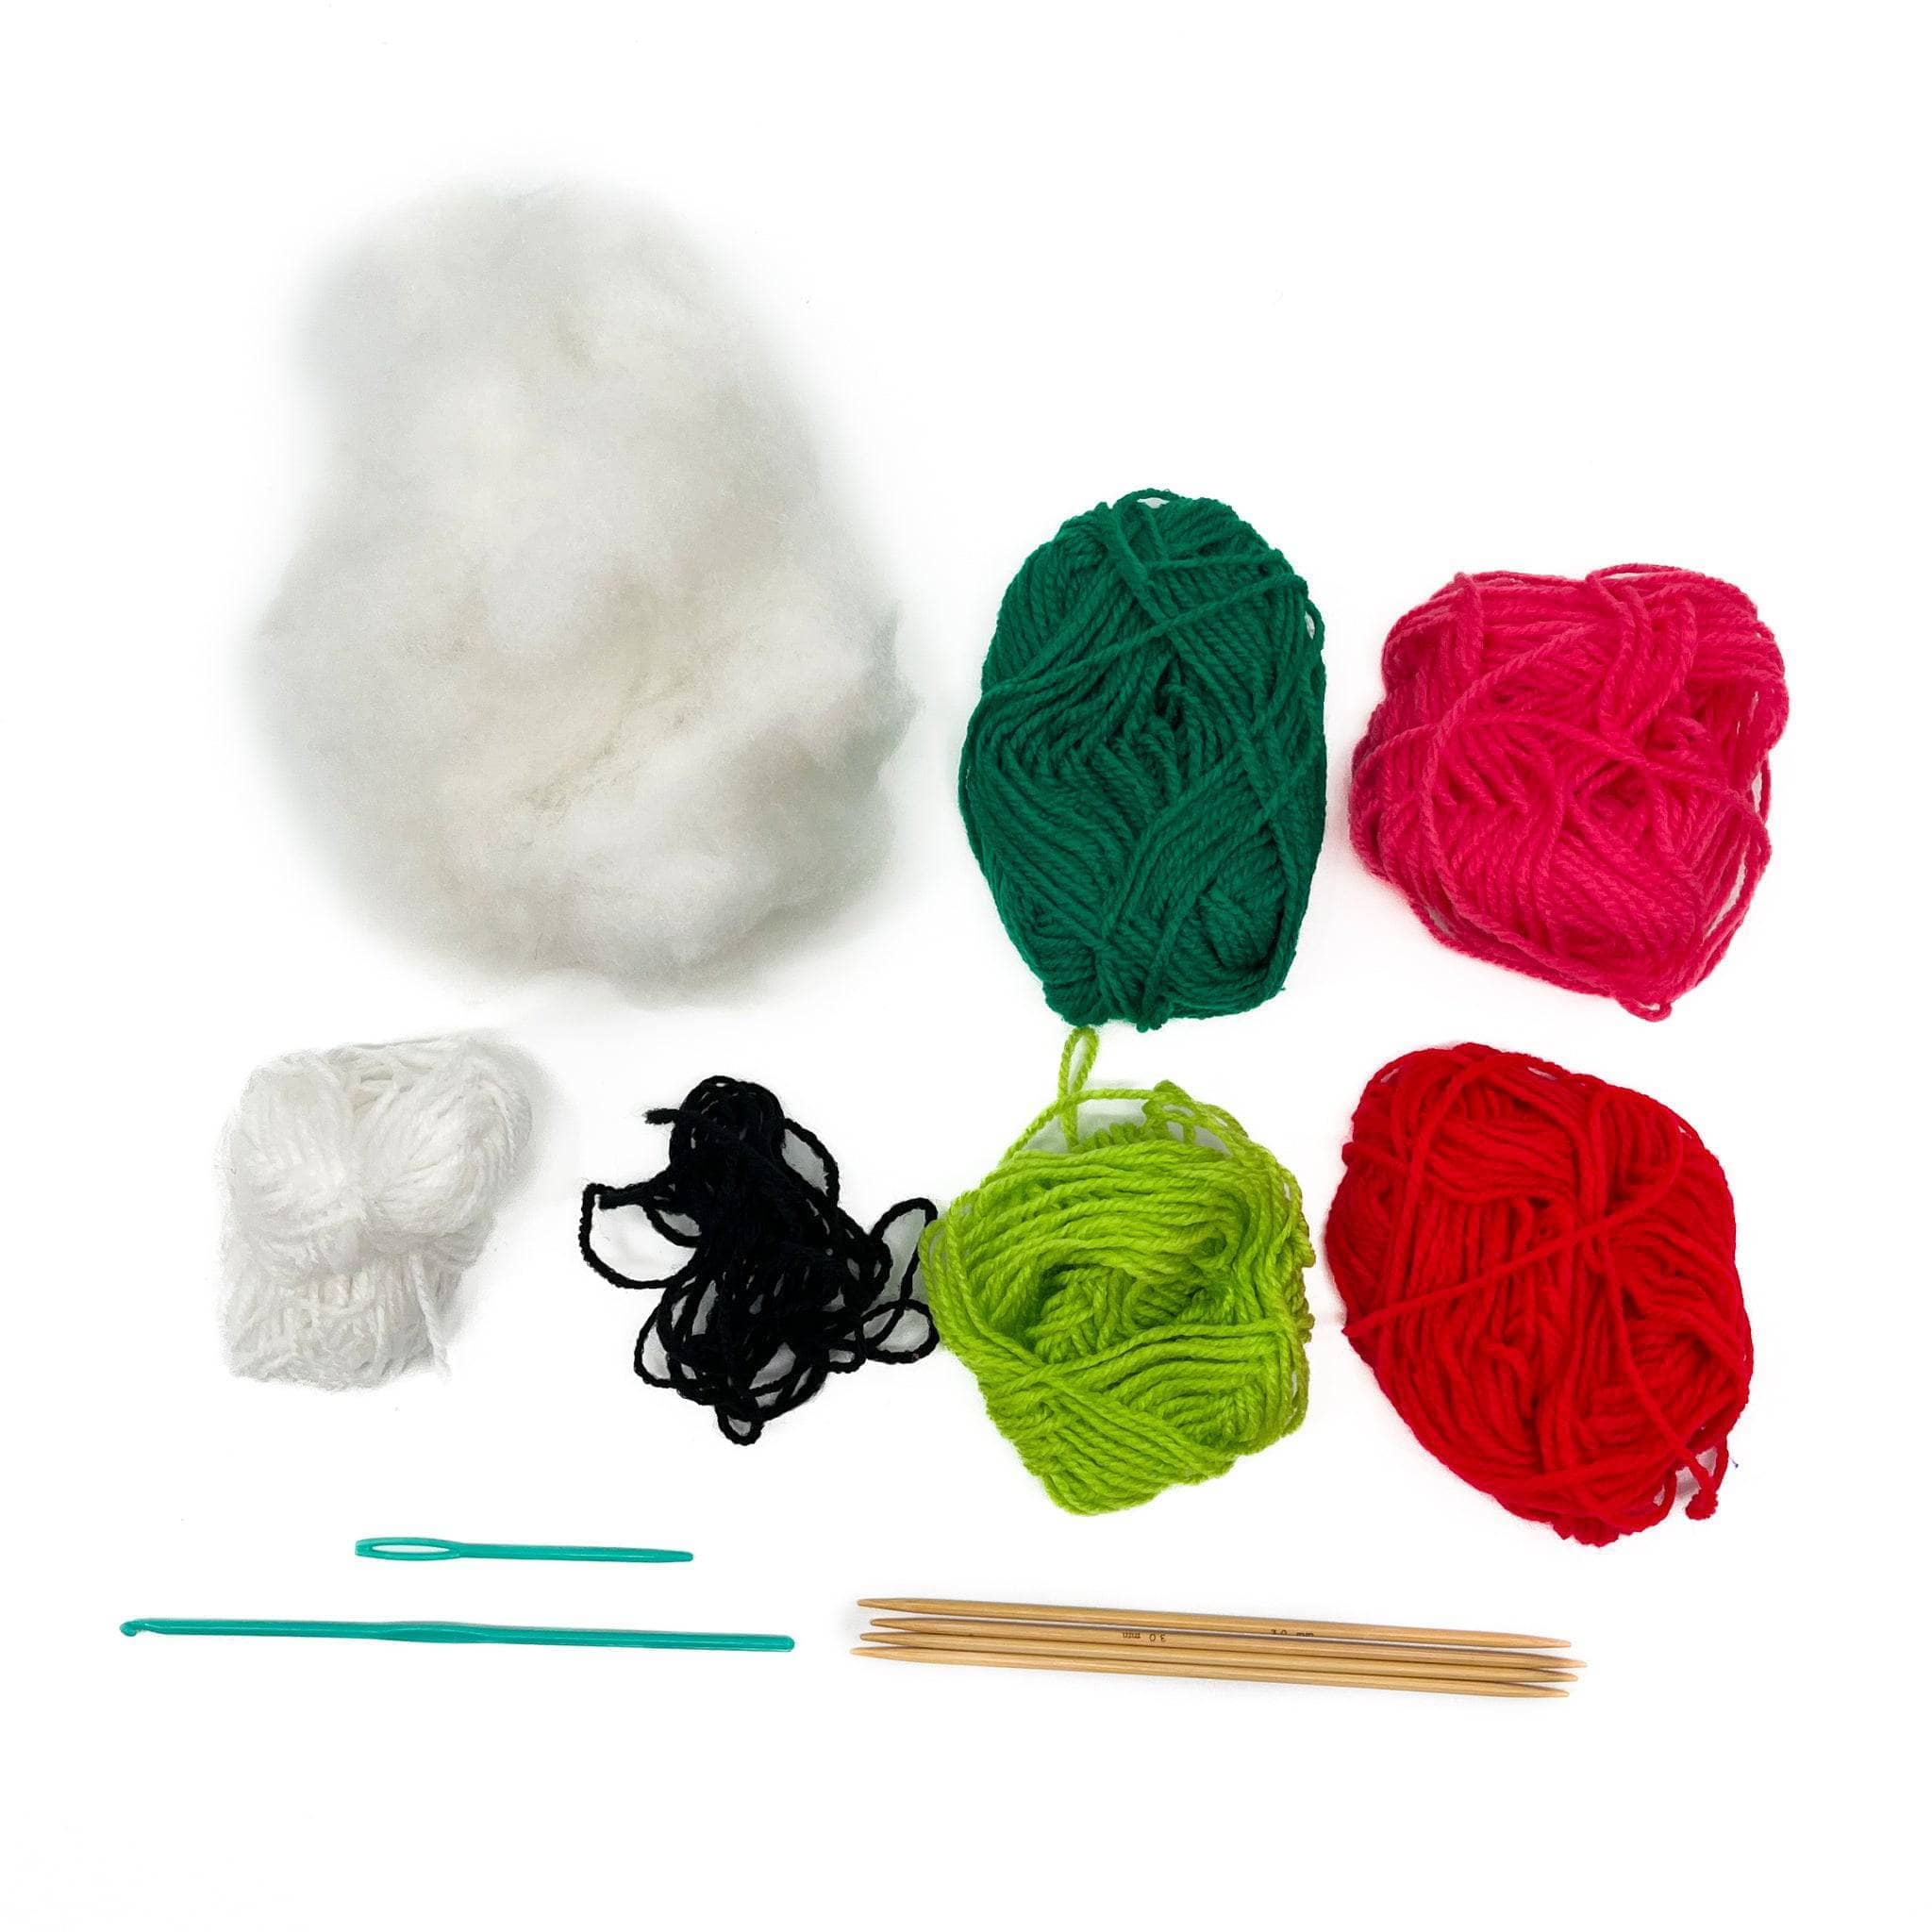 Darn Good Yarn - Kit de ganchillo para principiantes a intermedios | Sandía  DIY Crochet Amigurumi - El kit de ganchillo incluye patrón, hilo, gancho